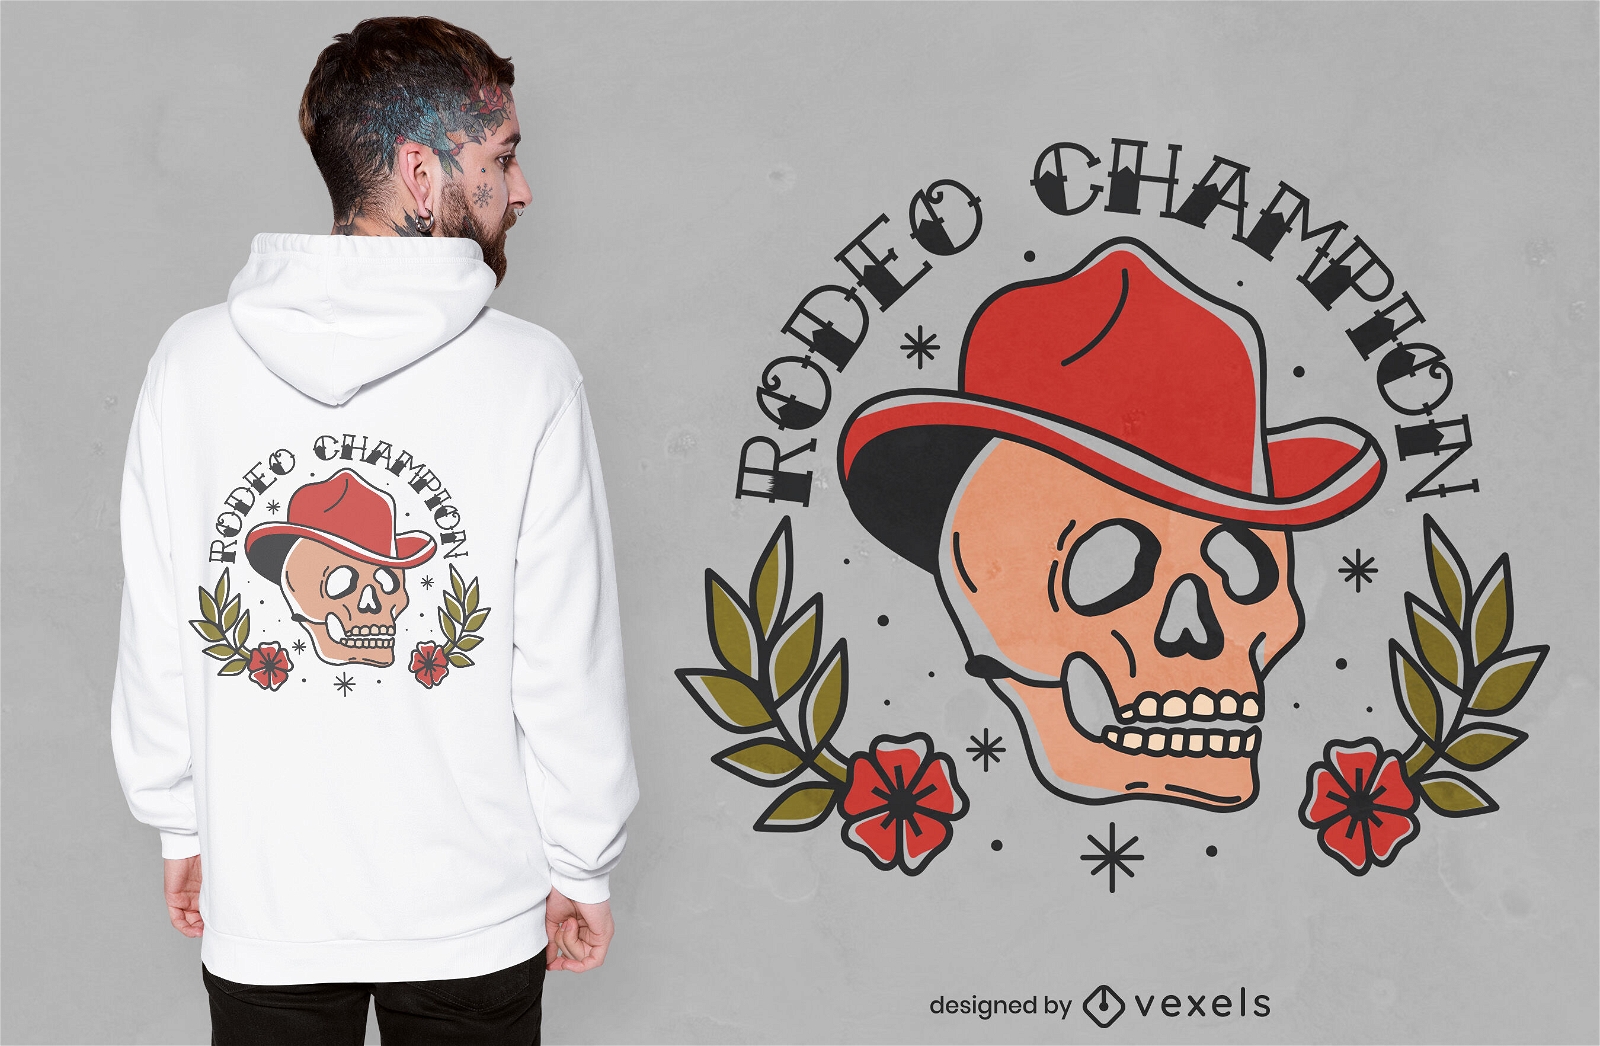 Rodeo Champion Totenkopf T-Shirt Design